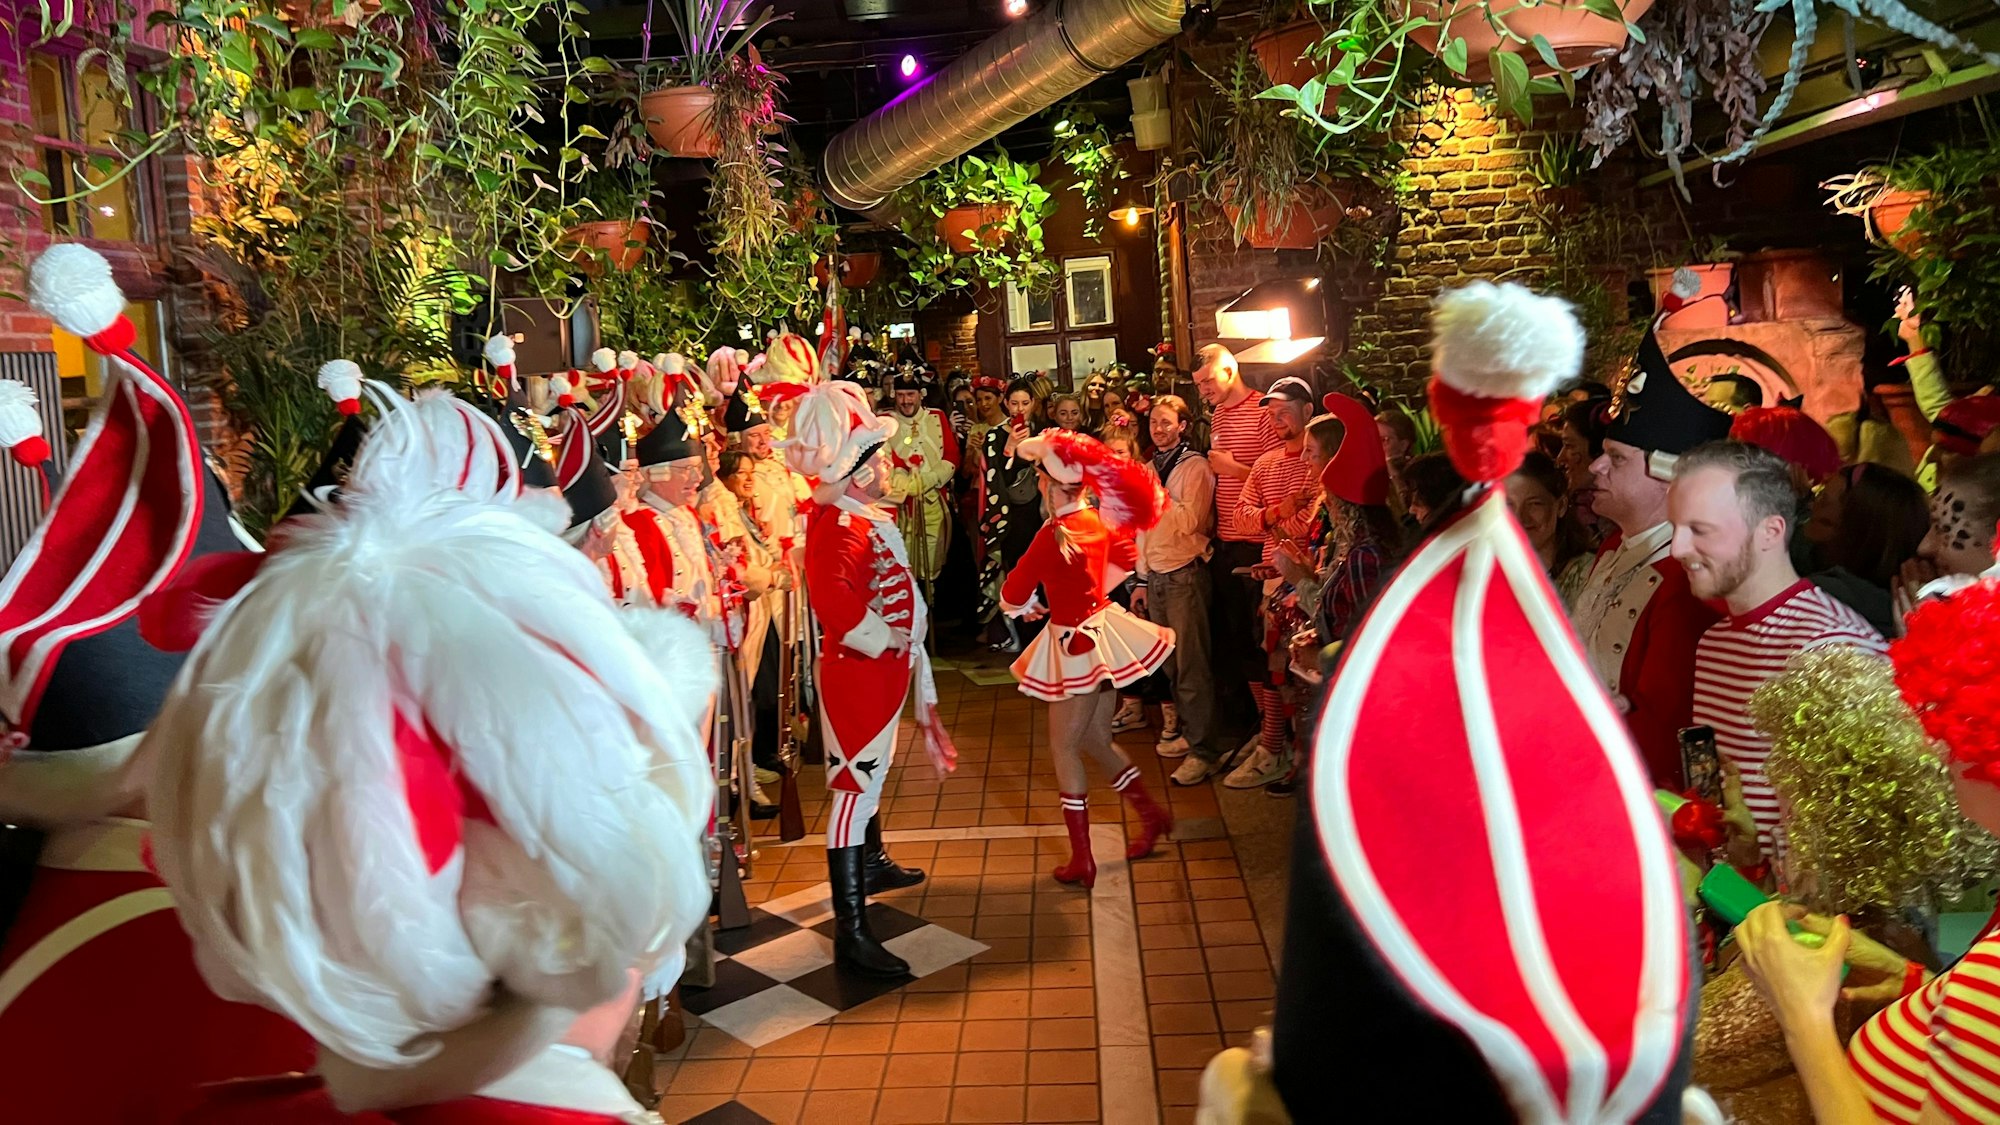 Karnevalisten feiern im Hellers Brauhaus, in der Mitte tanzt das Tanzpaar.